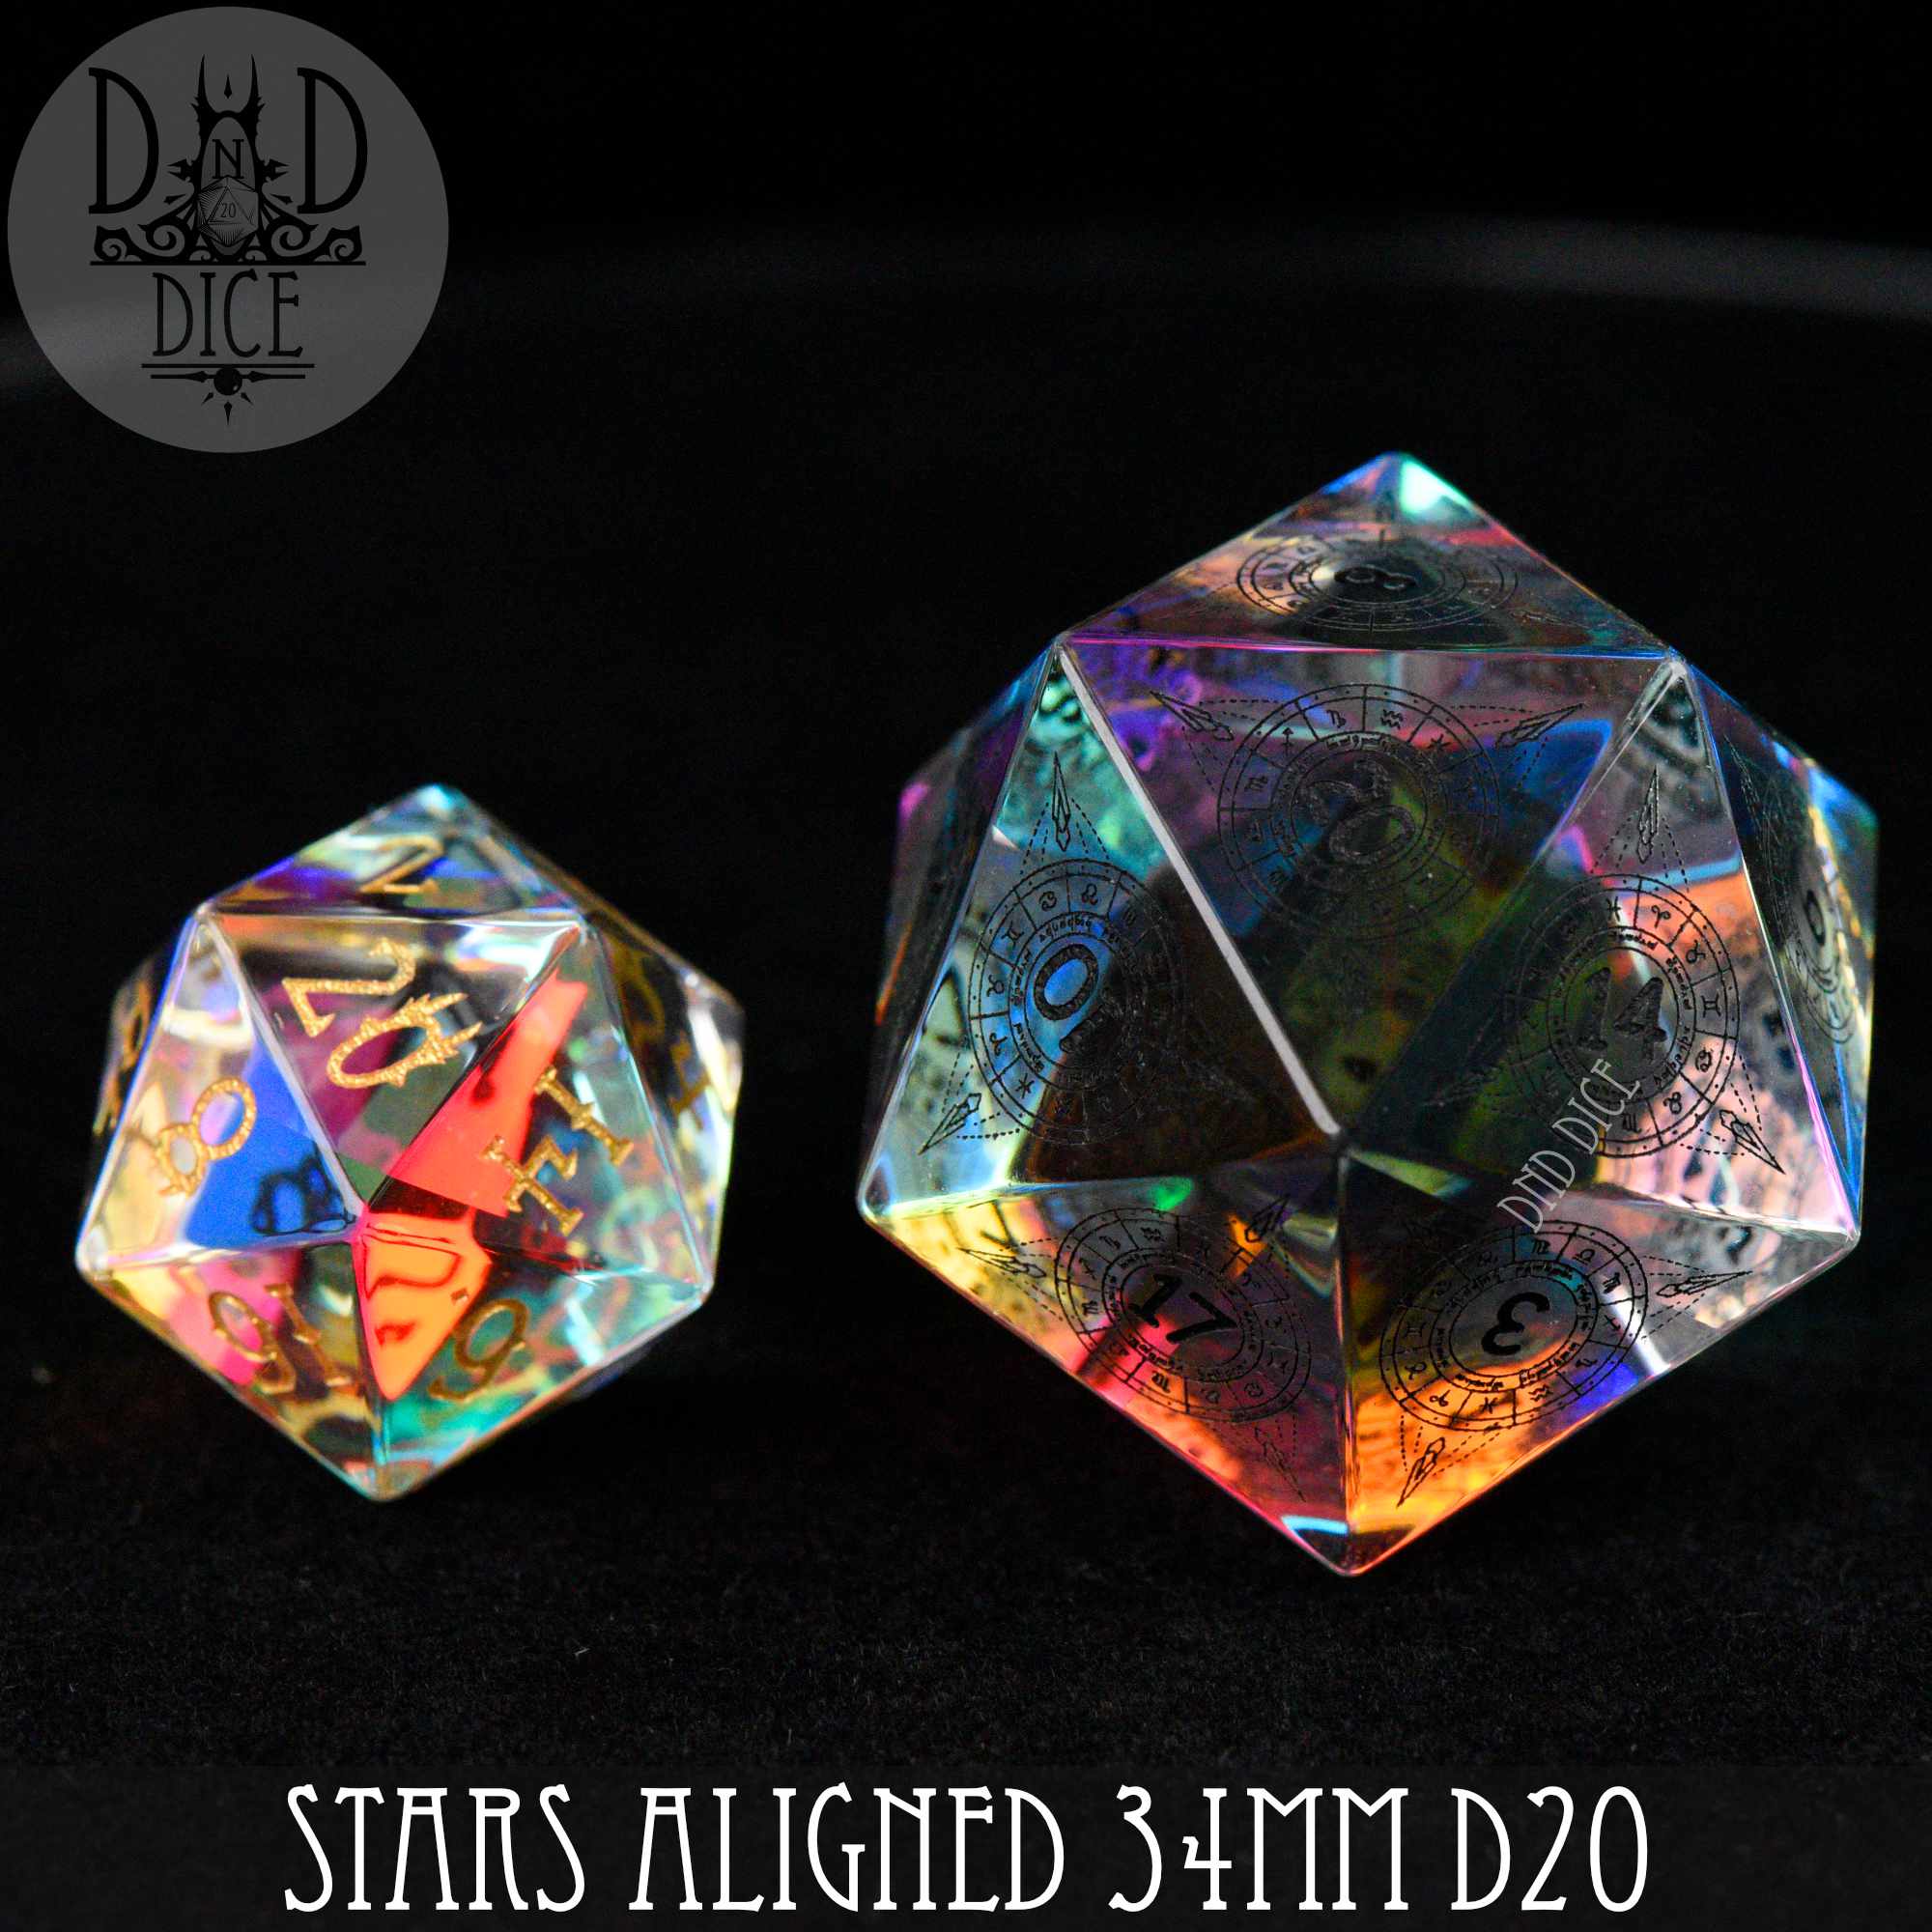 Stars Aligned Glass 30mm D20 (Gift Box)